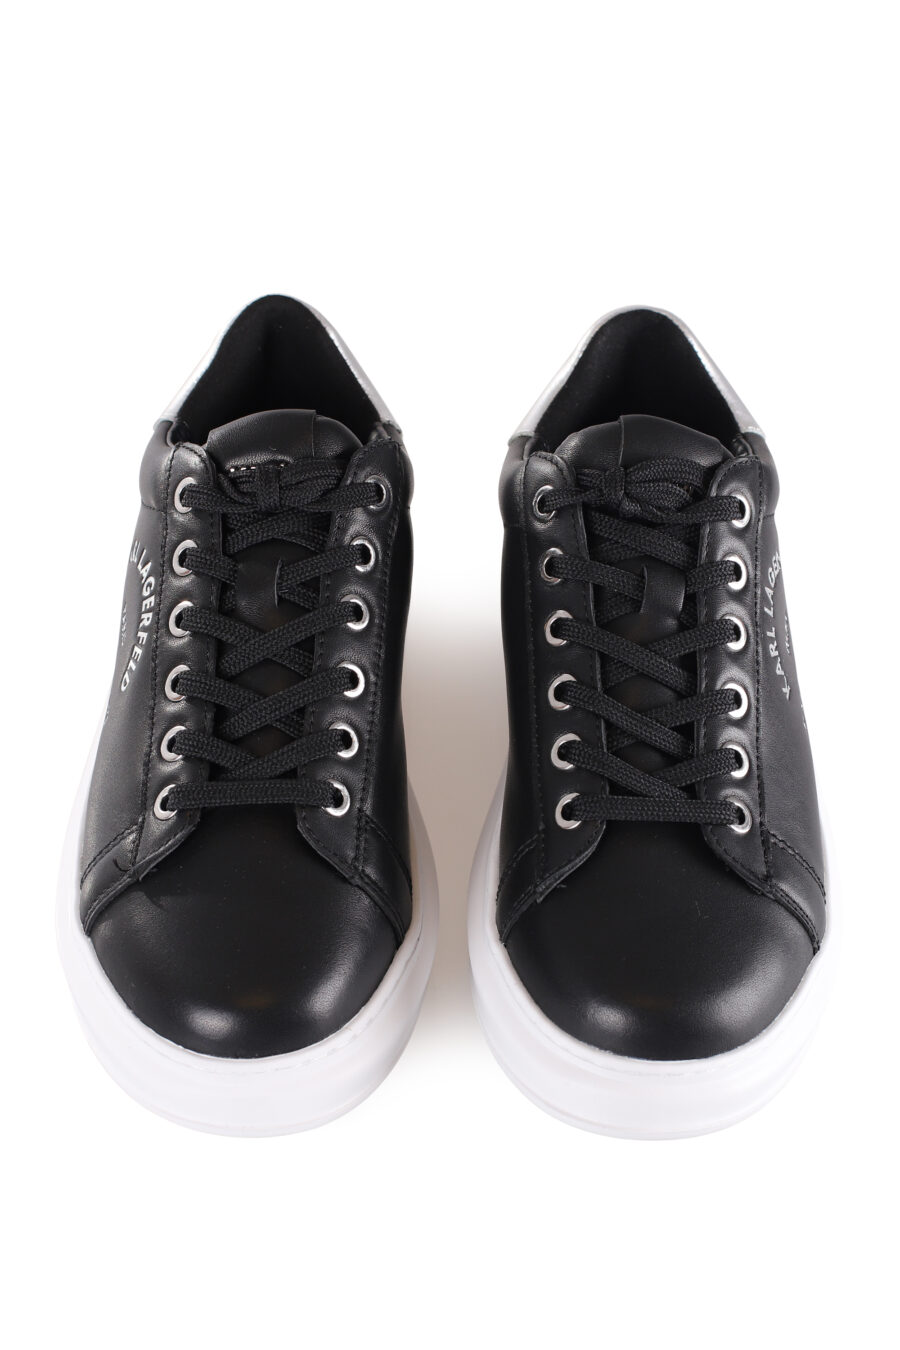 Zapatillas negras con logo plateado "lettering" de metal - IMG 9597